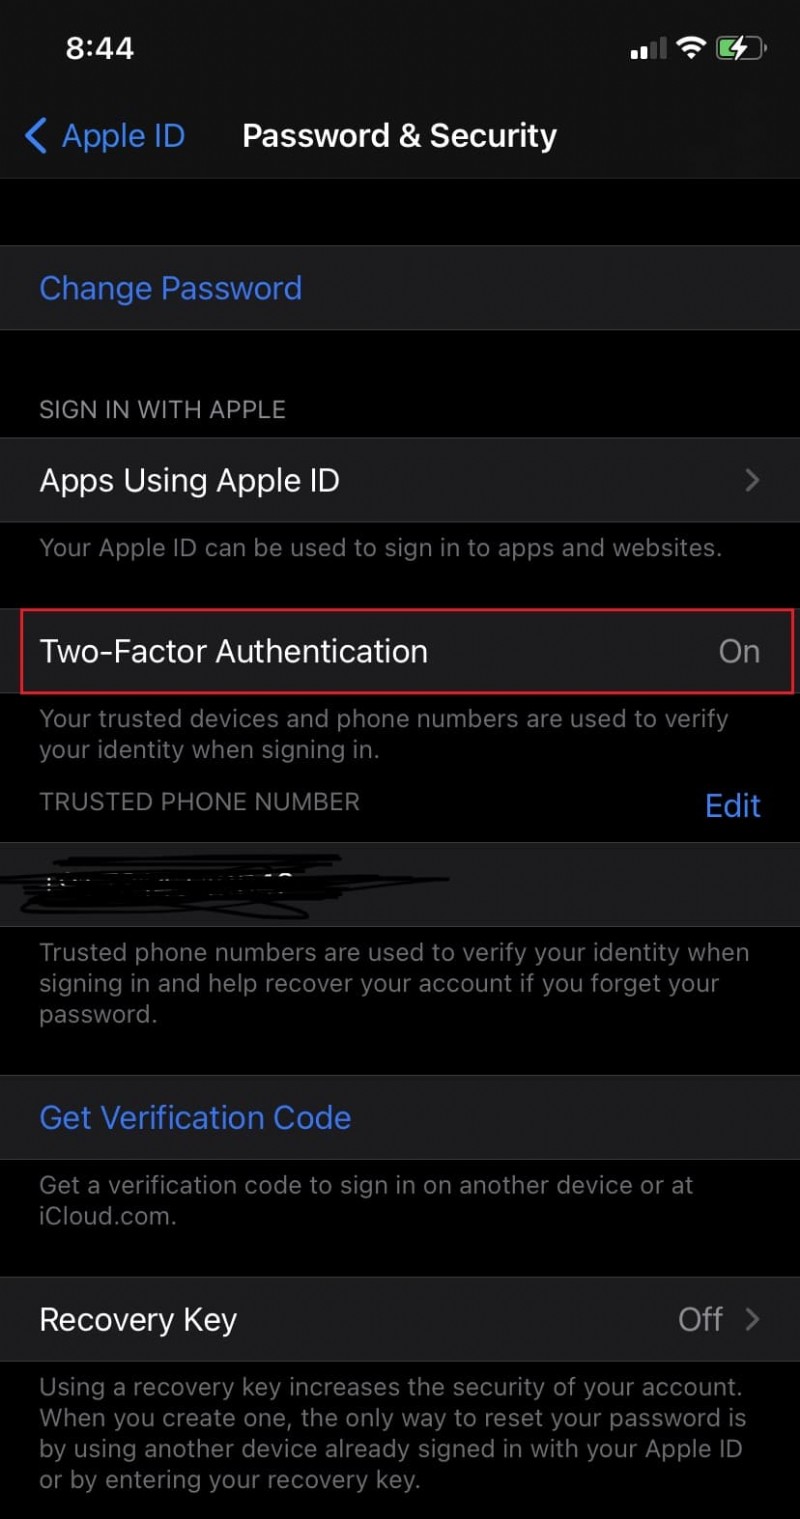 ฉันจะดูได้อย่างไรว่า Apple ID ของฉันถูกใช้อยู่ที่ไหน